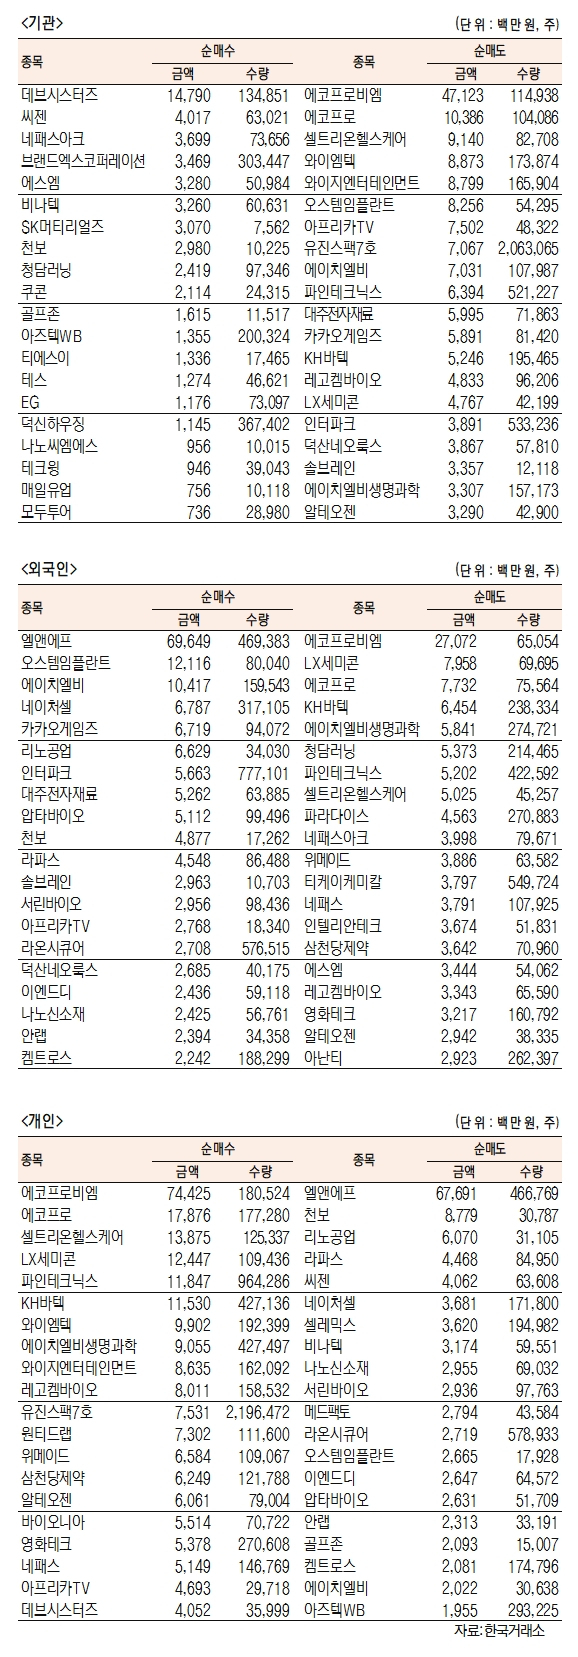 [표]코스닥 기관·외국인·개인 순매수·도 상위종목(9월 13일-최종치)